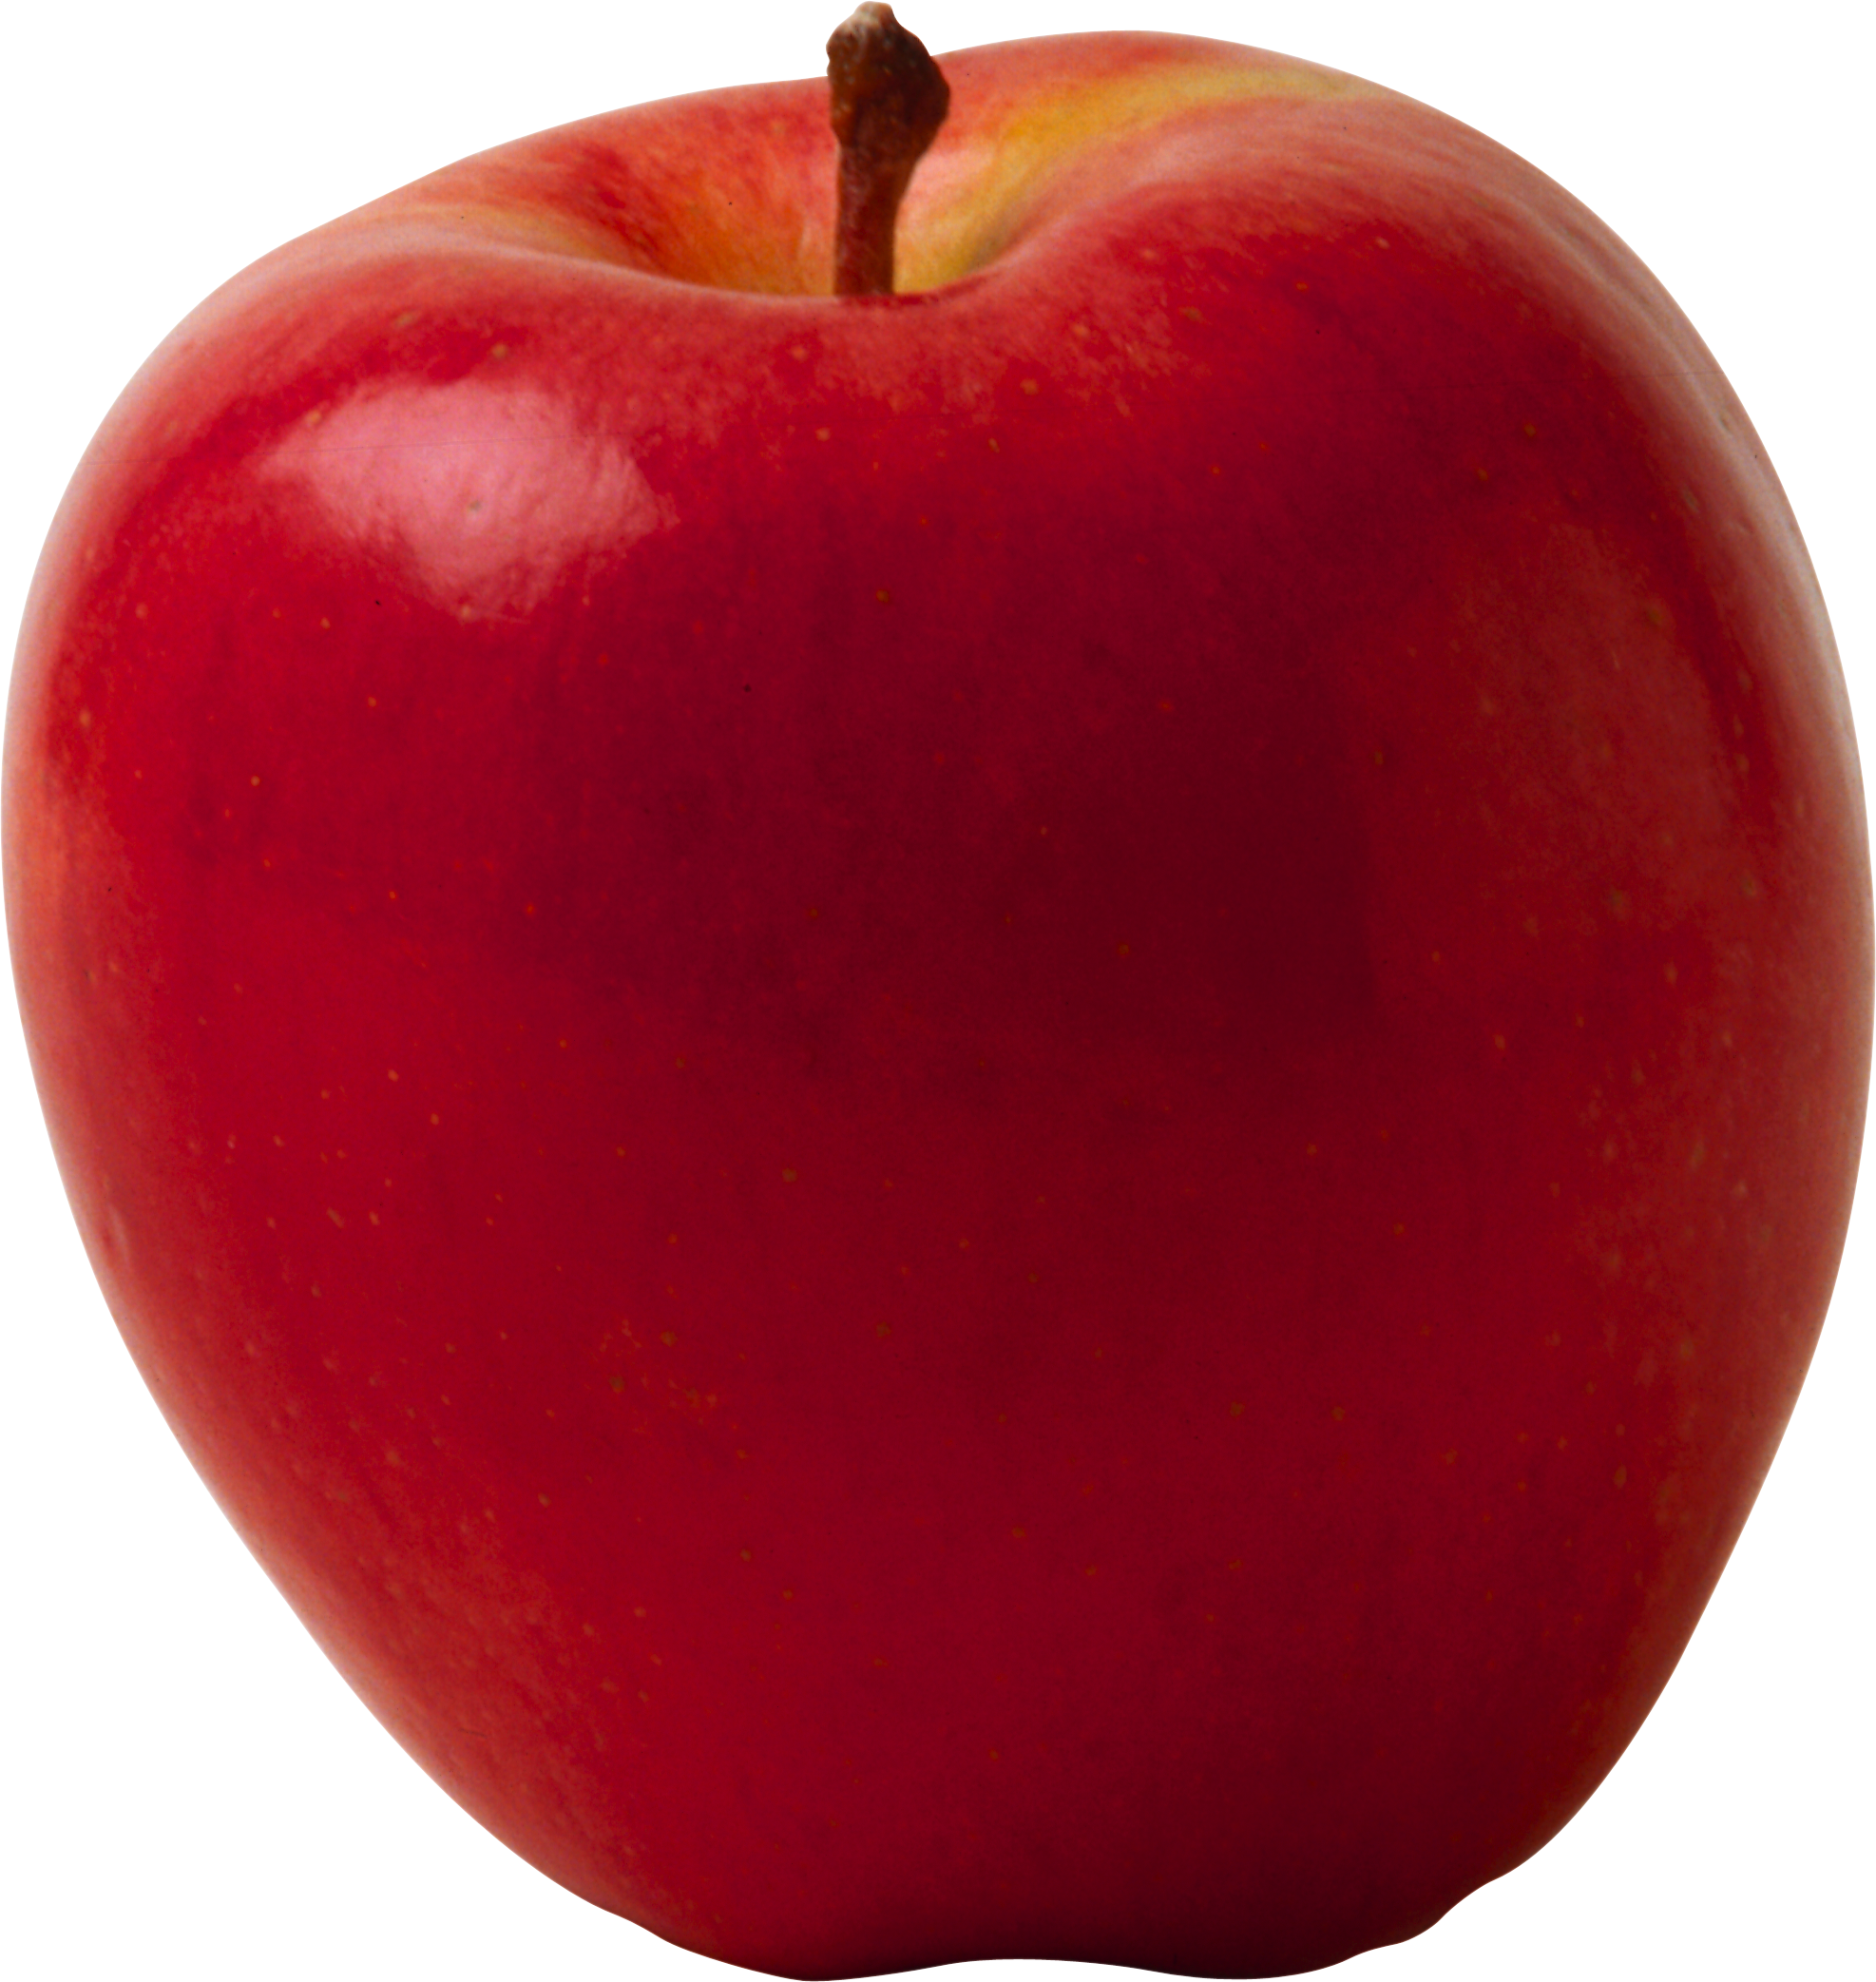 Мешок яблок | дошкольное образование  | современный урок